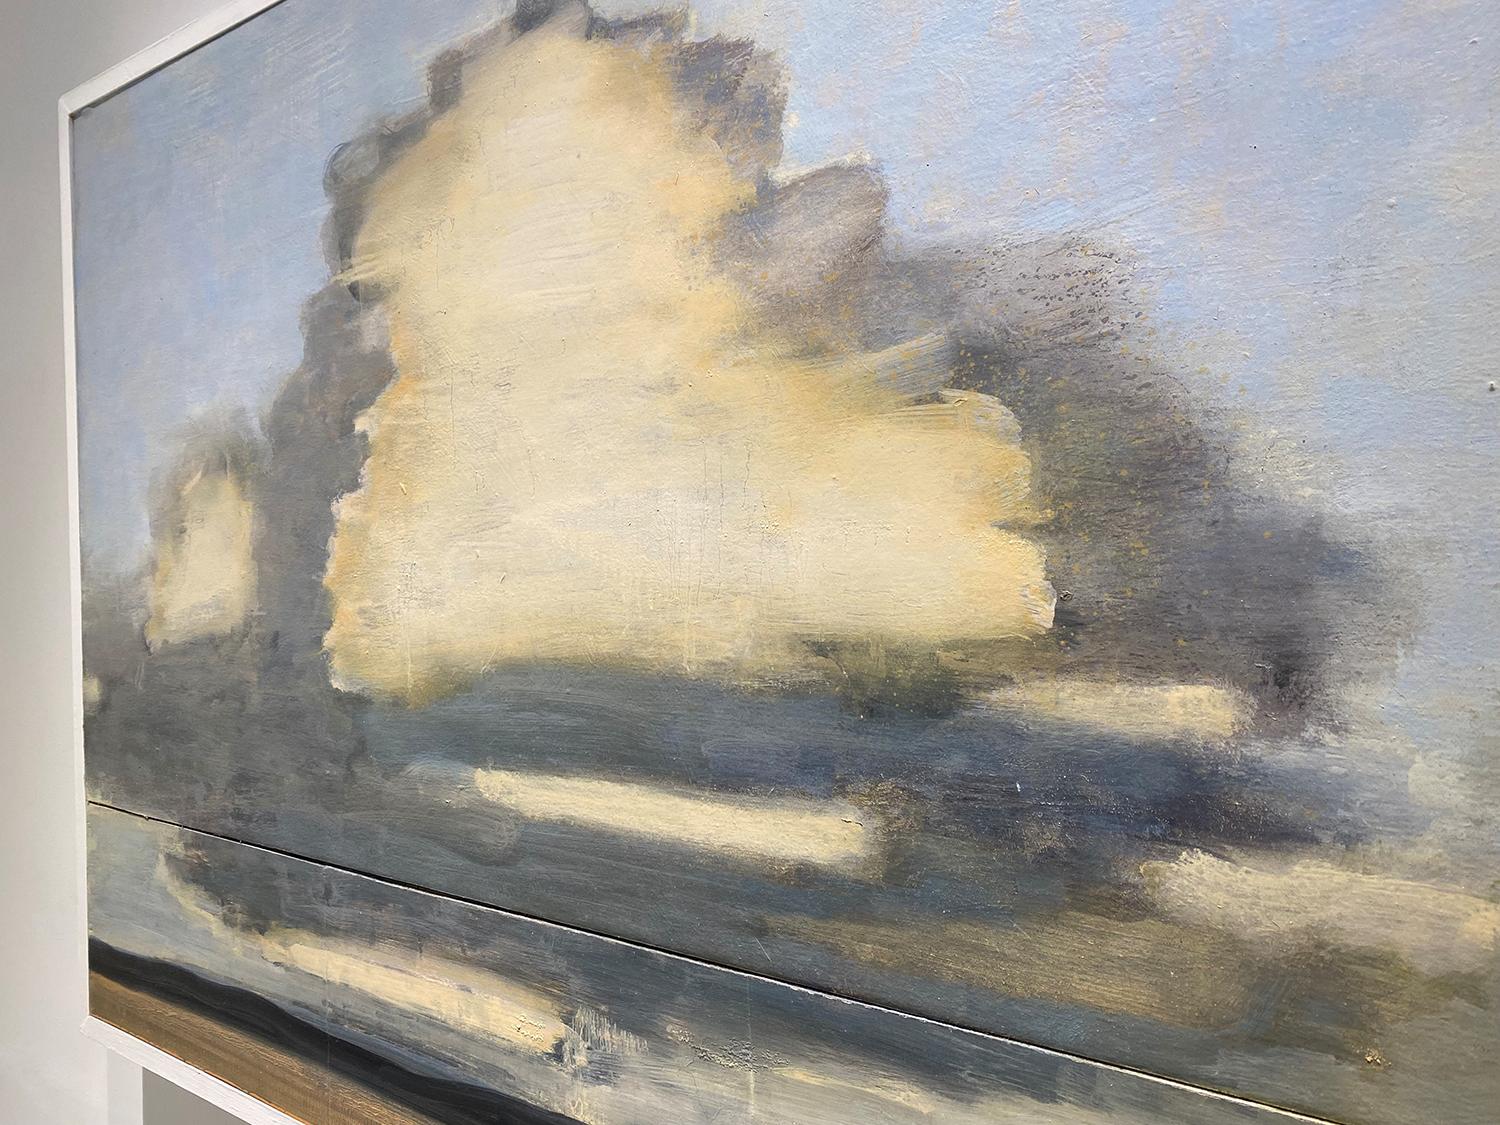 Cumulus und weites Feld (Zeitgenössische Landschaftsmalerei Blähende weiße Cumuluswolken gegen einen blassblauen Himmel über Feldern)
öl auf zwei Tafeln, zusammengesetztes Diptychon, mit einem weiß lackierten Holzrahmen
33 x 45,25 x 2,5 Zoll
das